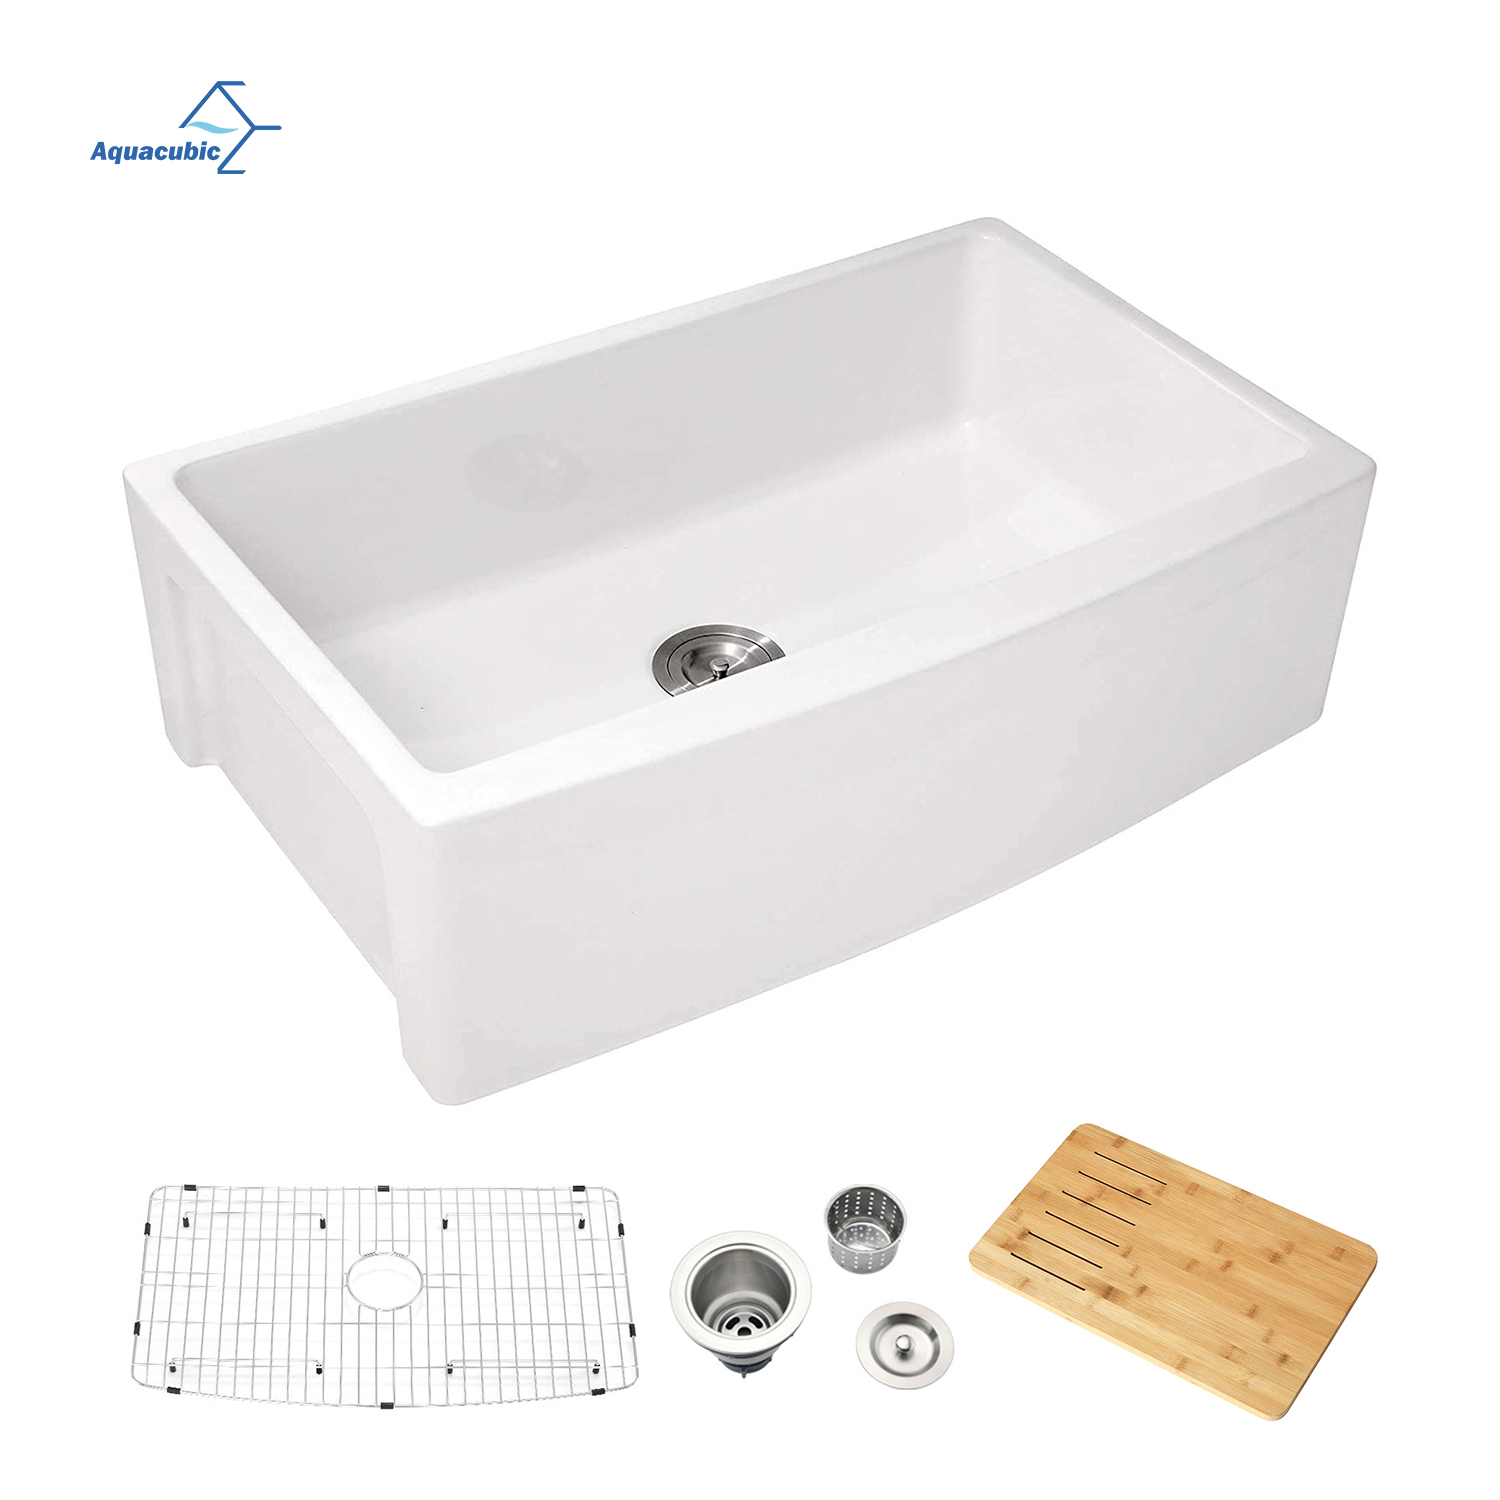 Aquacubic cUPC-zertifiziert, 83,8 x 53,3 cm, weiße Keramik-Küchenschürze mit einer Schüssel an der Vorderseite des Bauernhaus-Spülbeckens